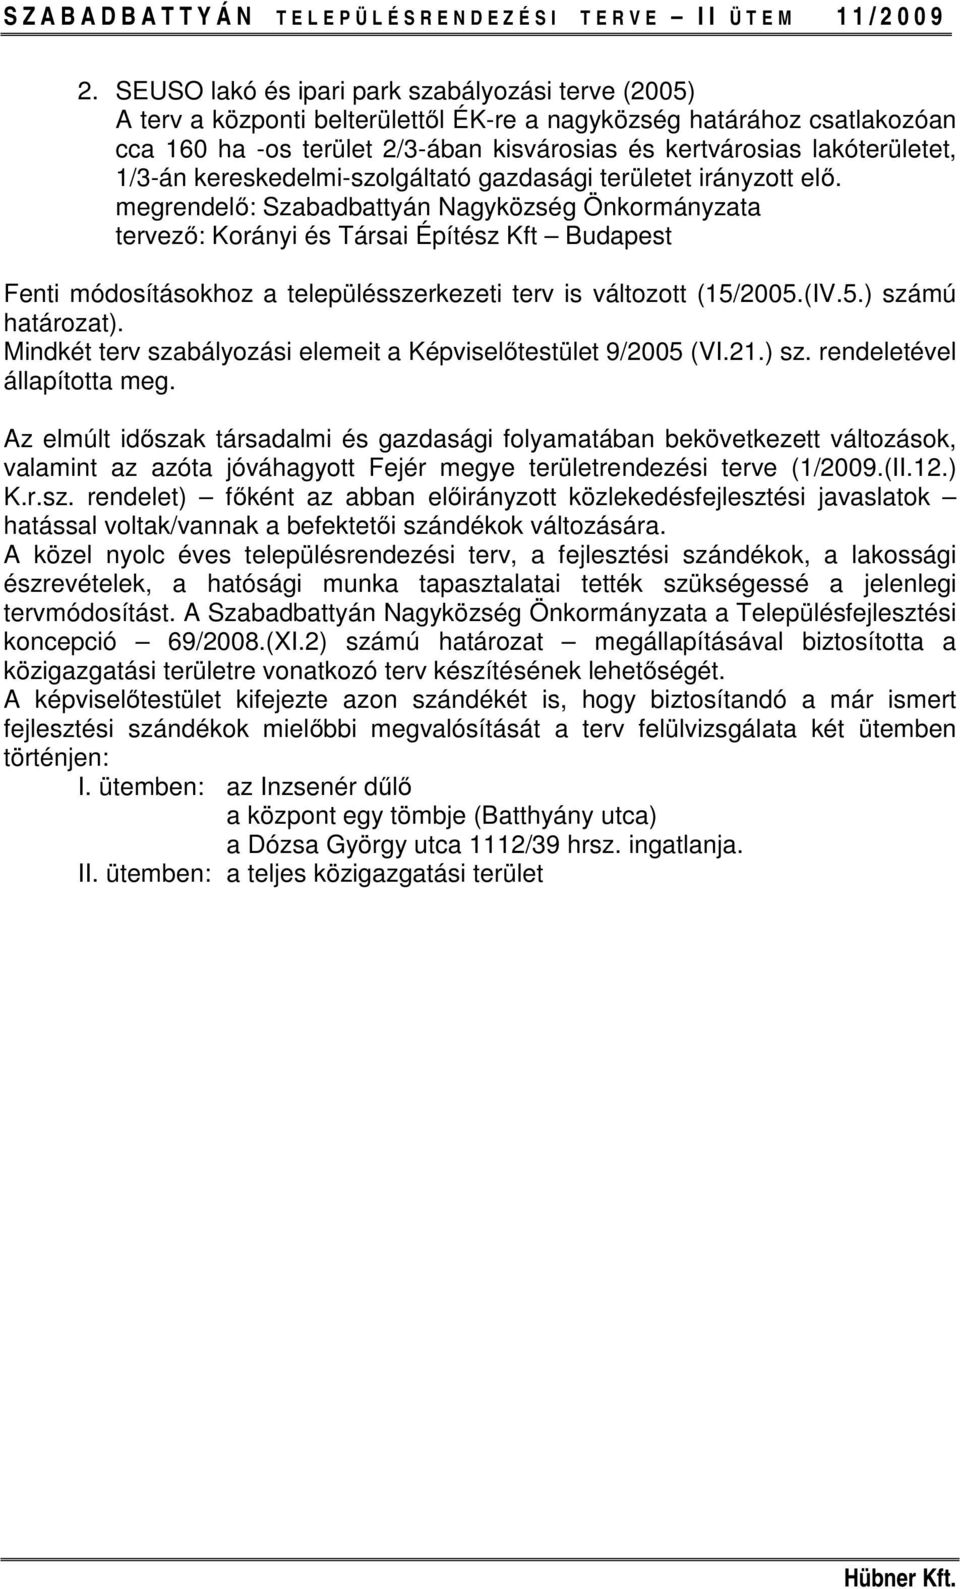 megrendelő: Szabadbattyán Nagyközség Önkormányzata tervező: Korányi és Társai Építész Kft Budapest Fenti módosításokhoz a településszerkezeti terv is változott (15/2005.(IV.5.) számú határozat).